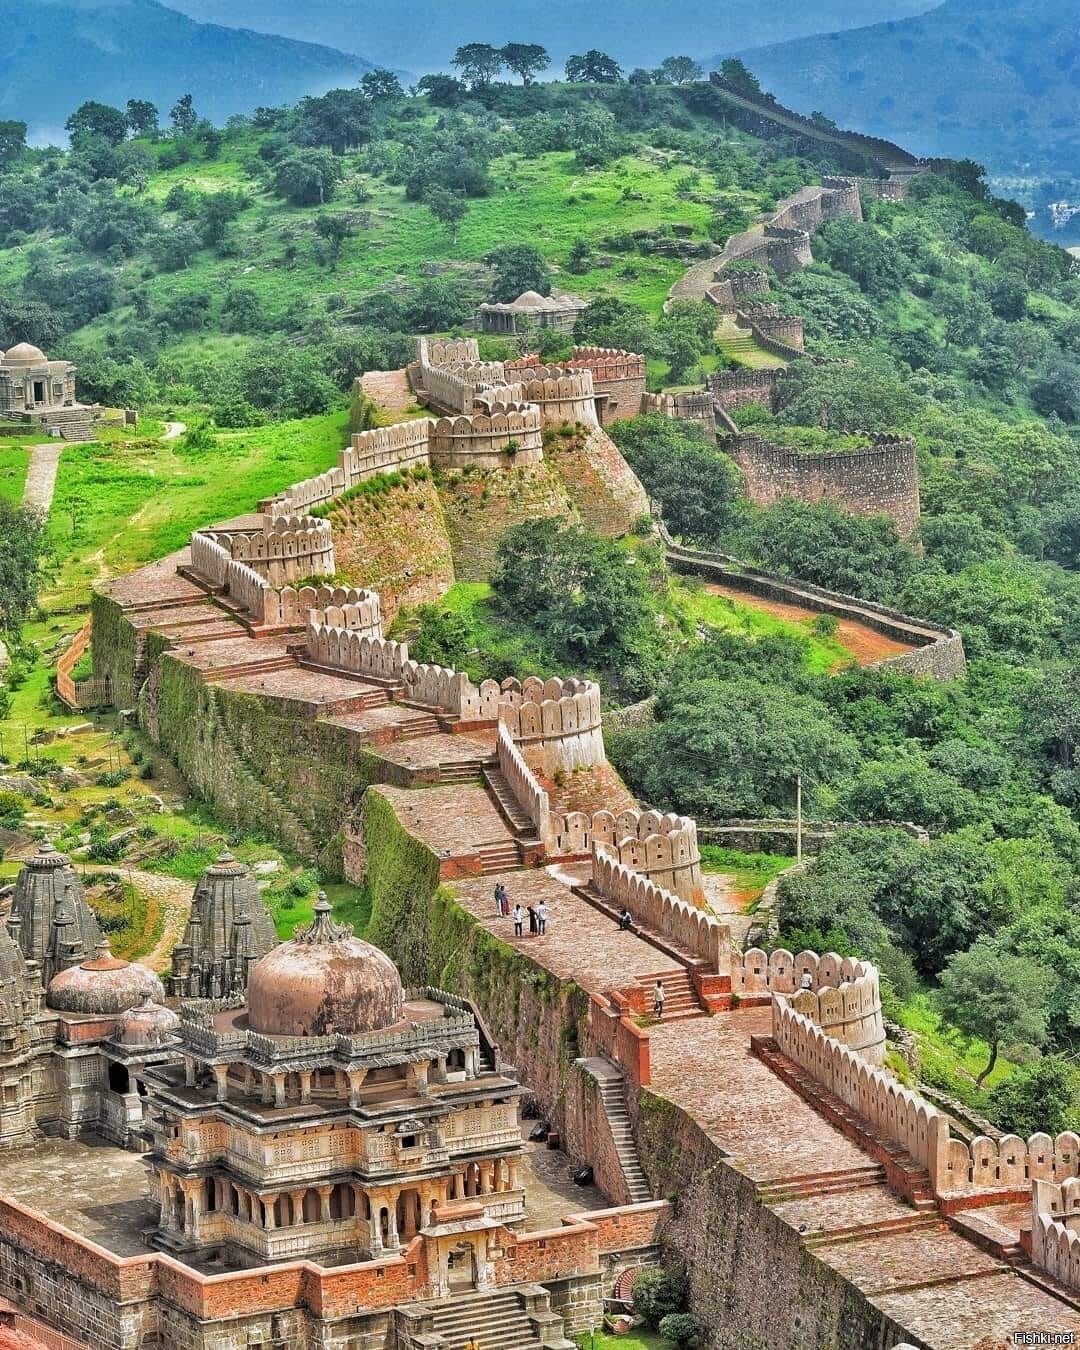 Вторая по длине стена в мире, форт Кумбалгарх, Индия